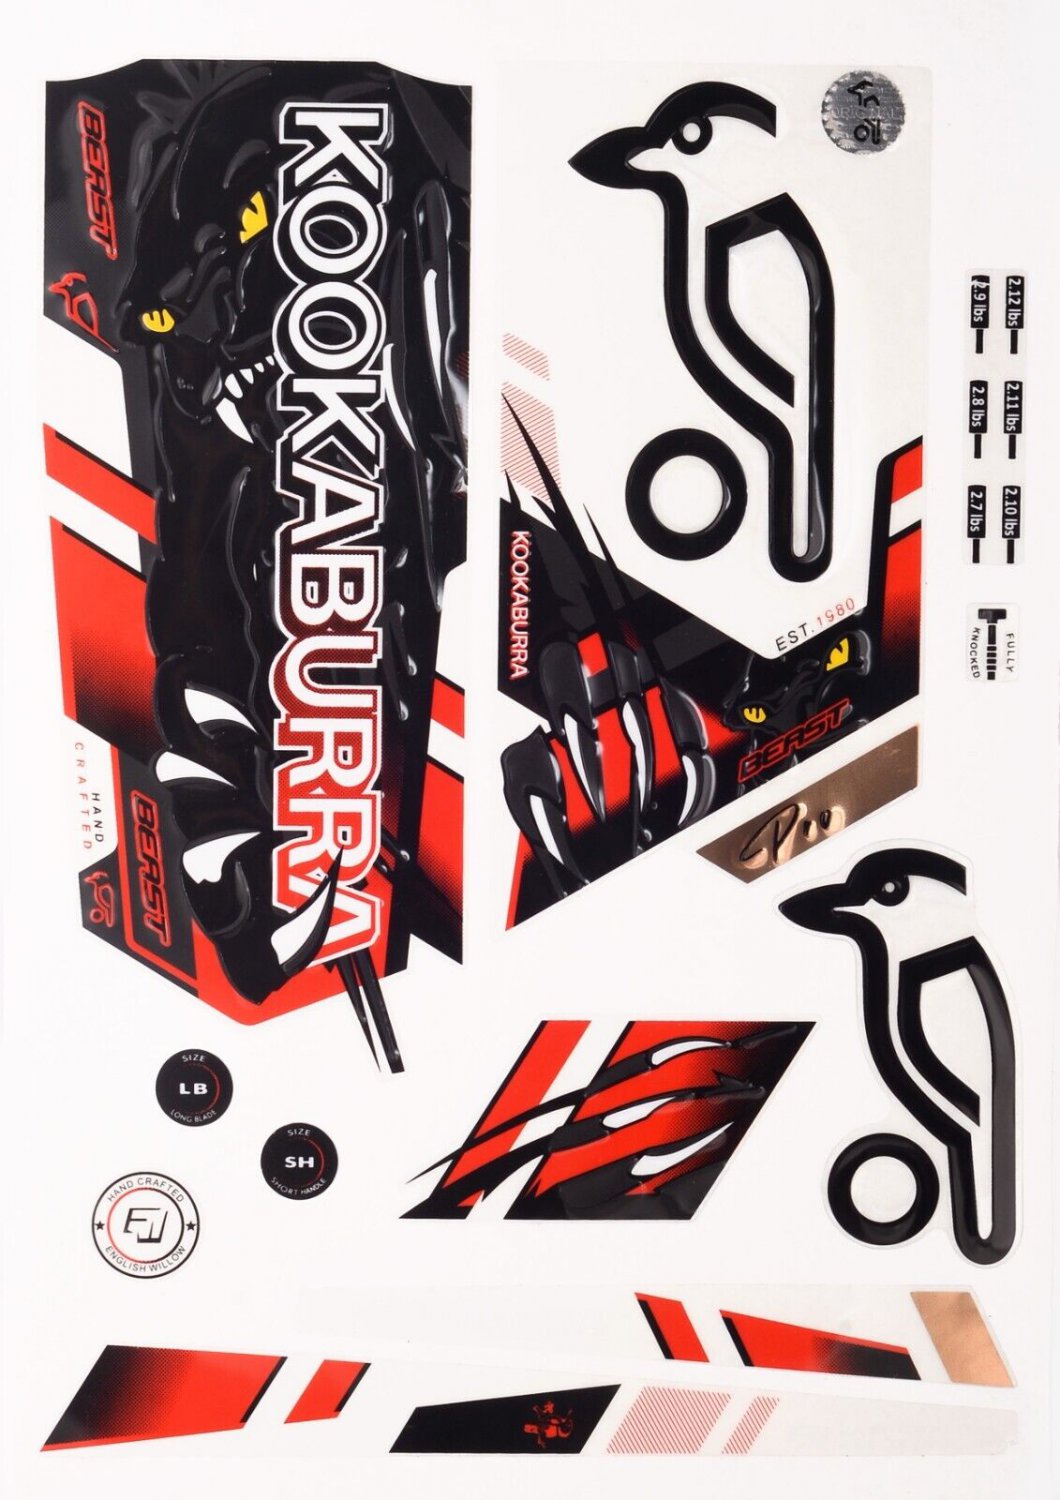 New Kookaburra Beast Pro BAT STICKER - 3D Embossed CRICKET BAT STICKER US STOCK